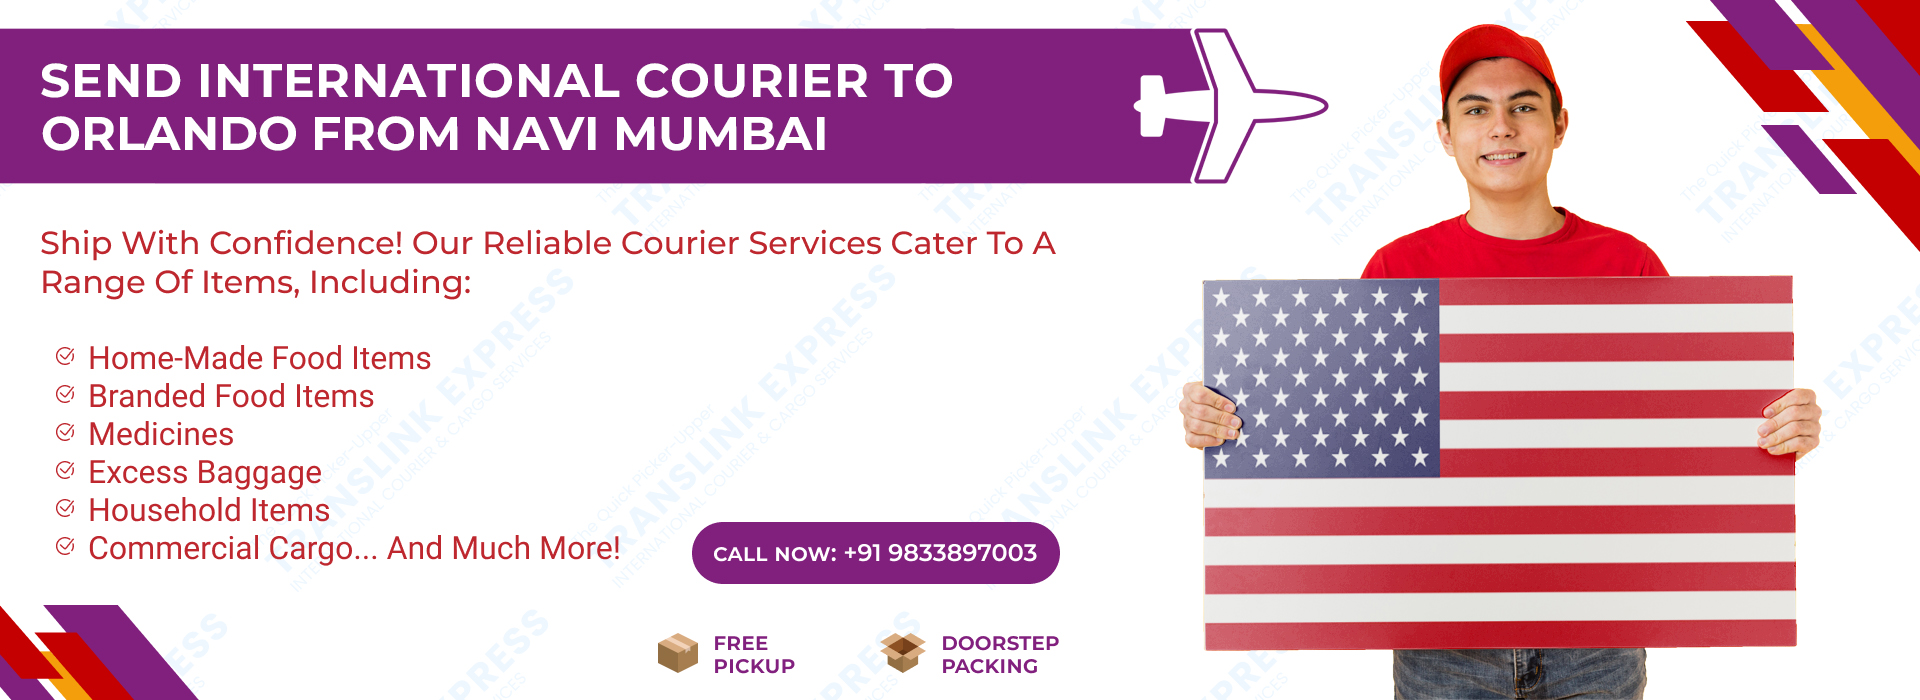 Courier to Orlando From Navi Mumbai